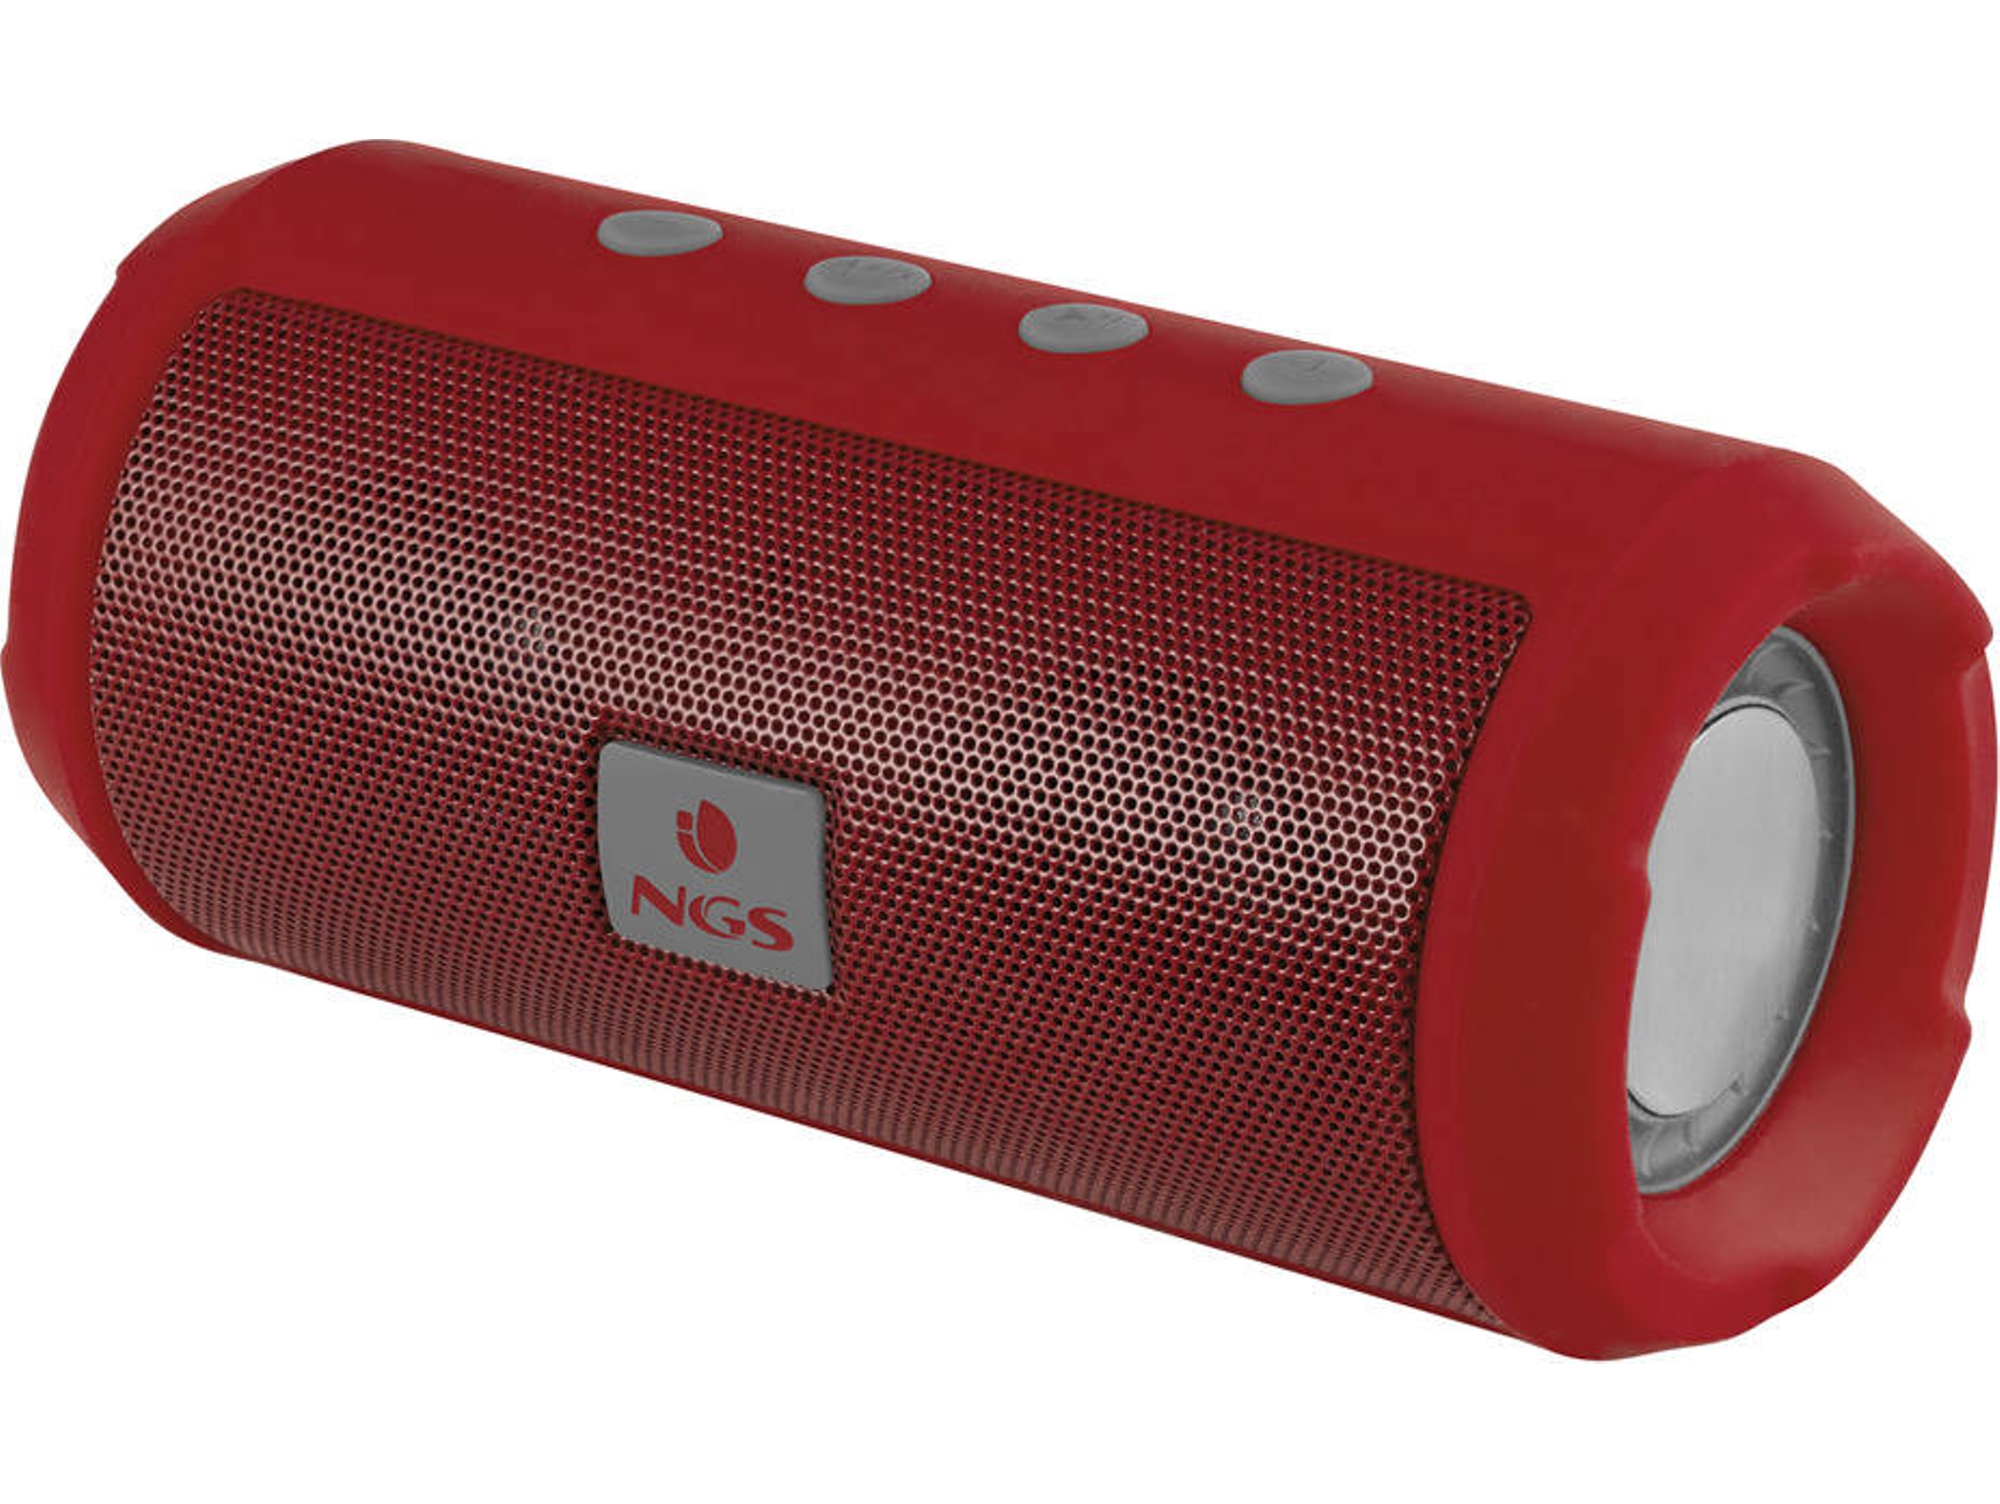 Altavoz Ngs Roller tumbler 6w fm usb 1200mah rojo bluetooth con sd radio manos libres y batería de microsd